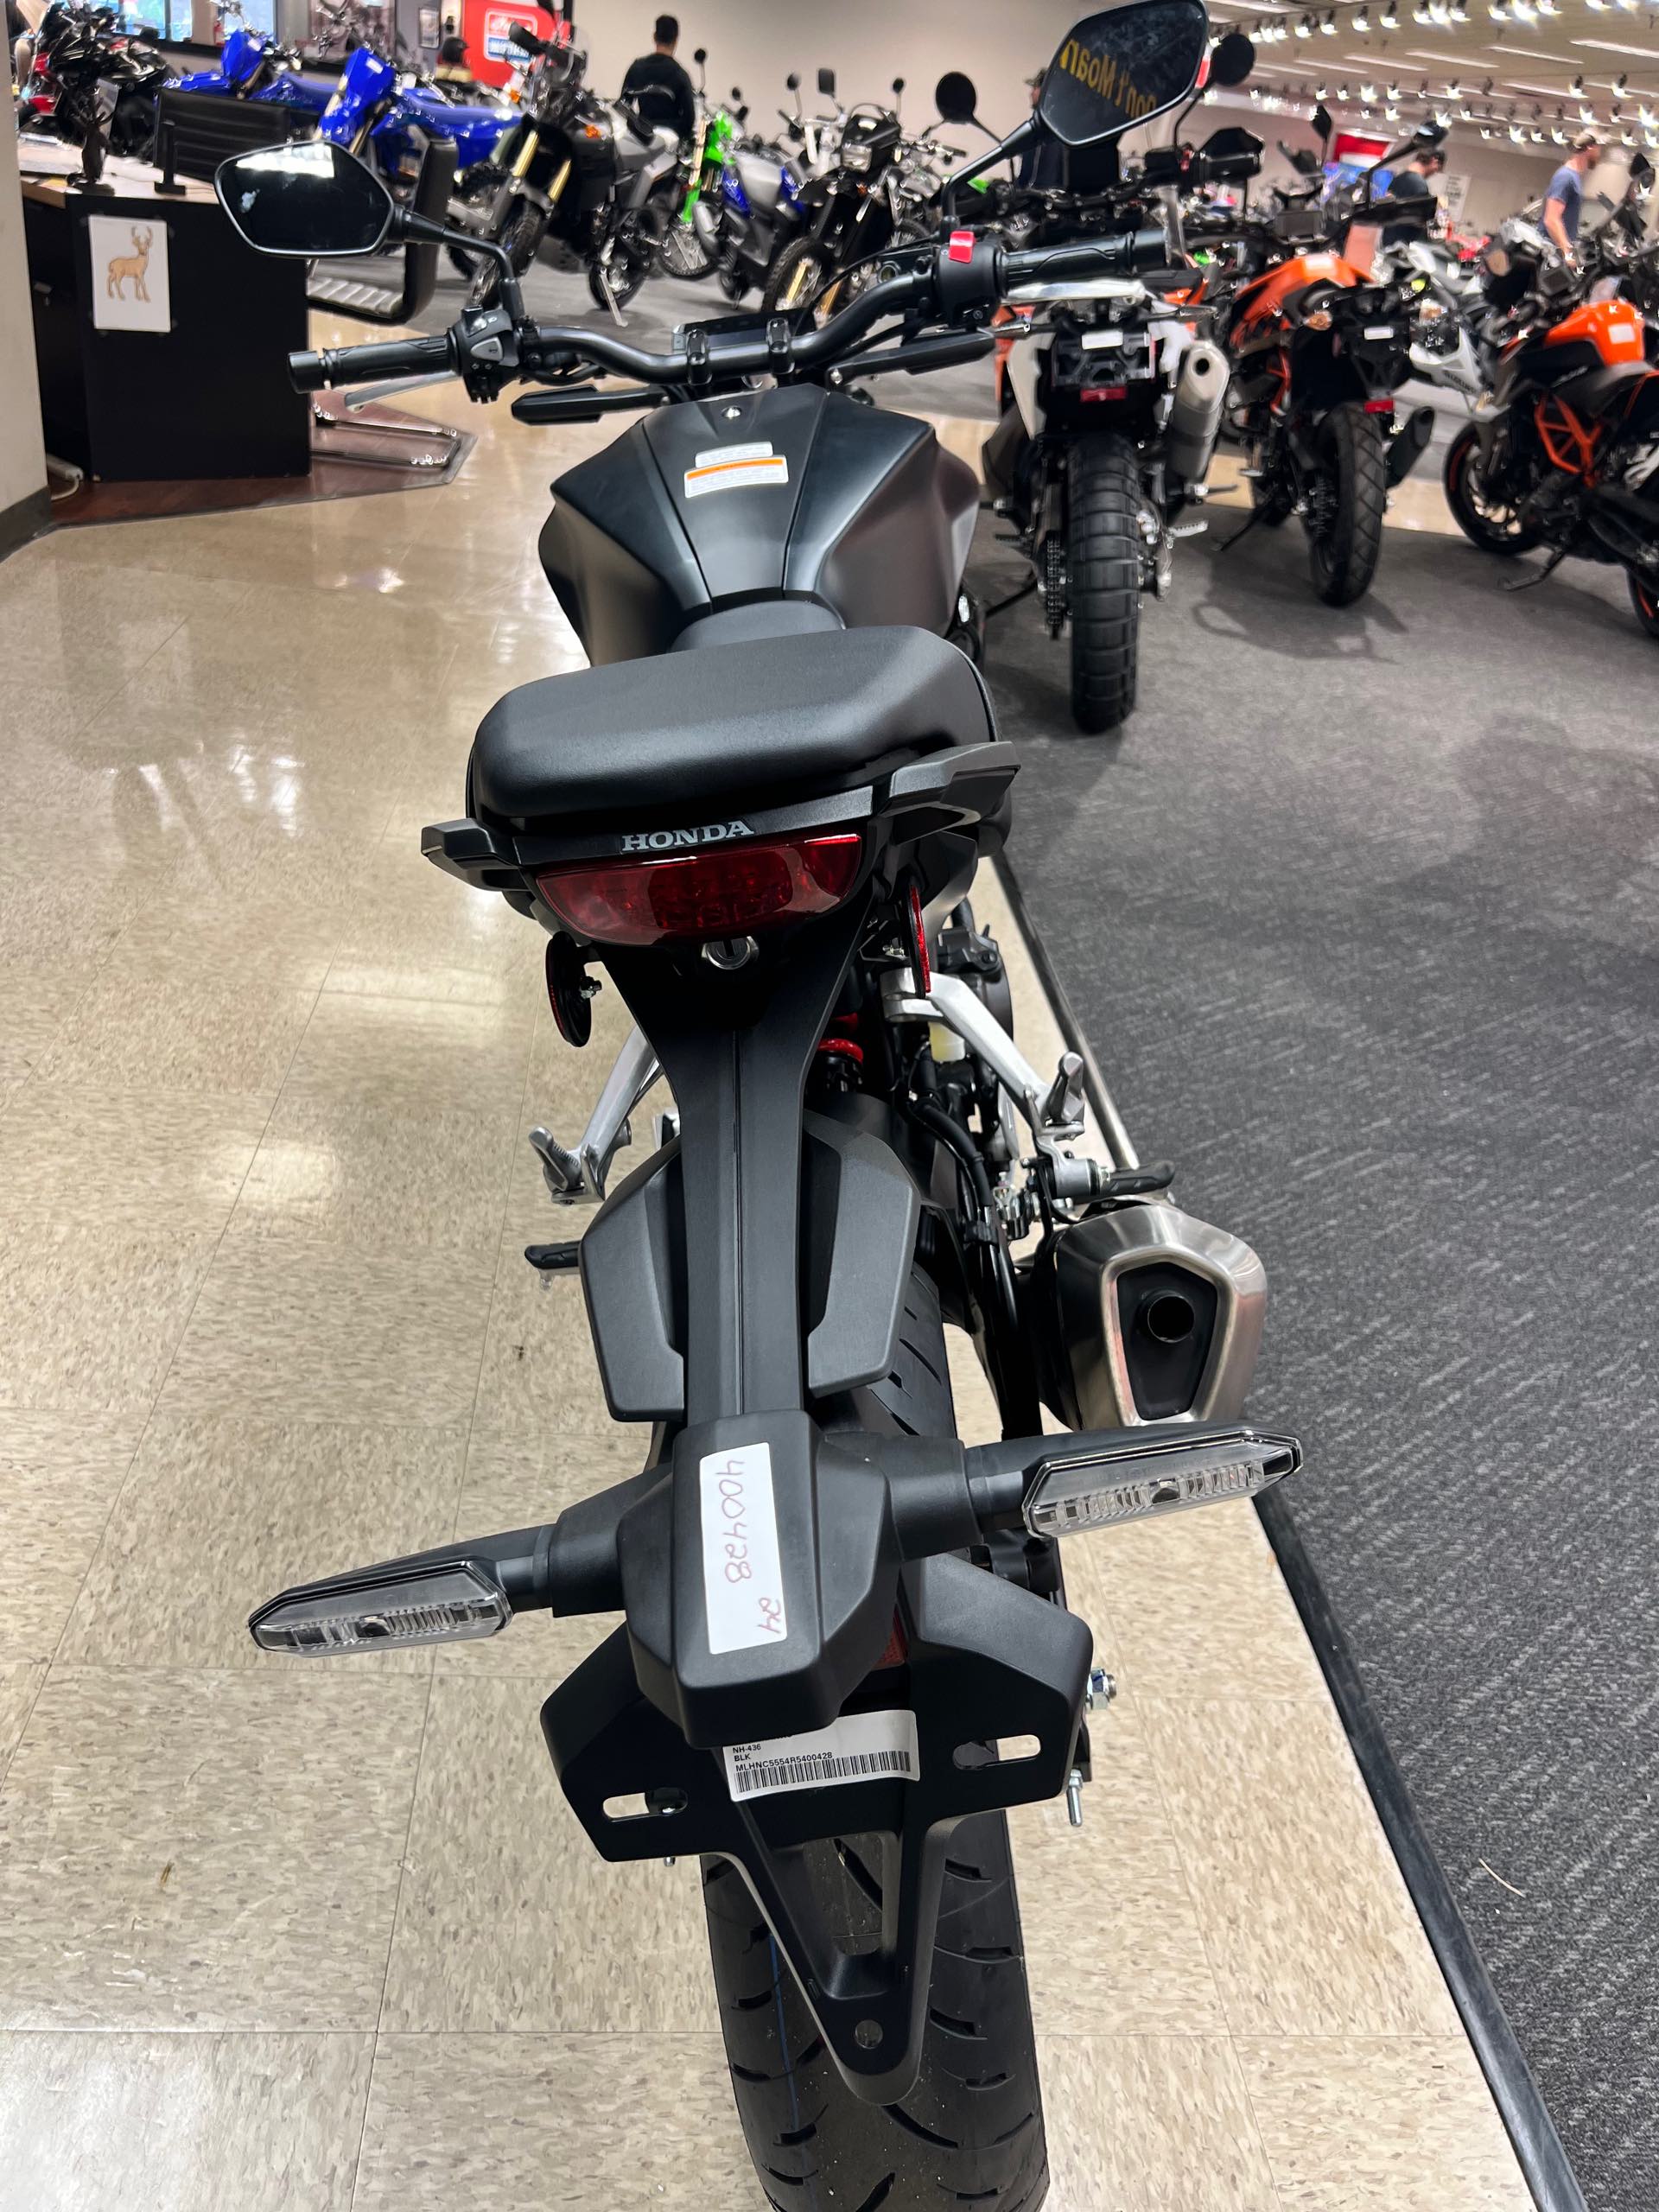 2024 Honda CB300R ABS at Sloans Motorcycle ATV, Murfreesboro, TN, 37129